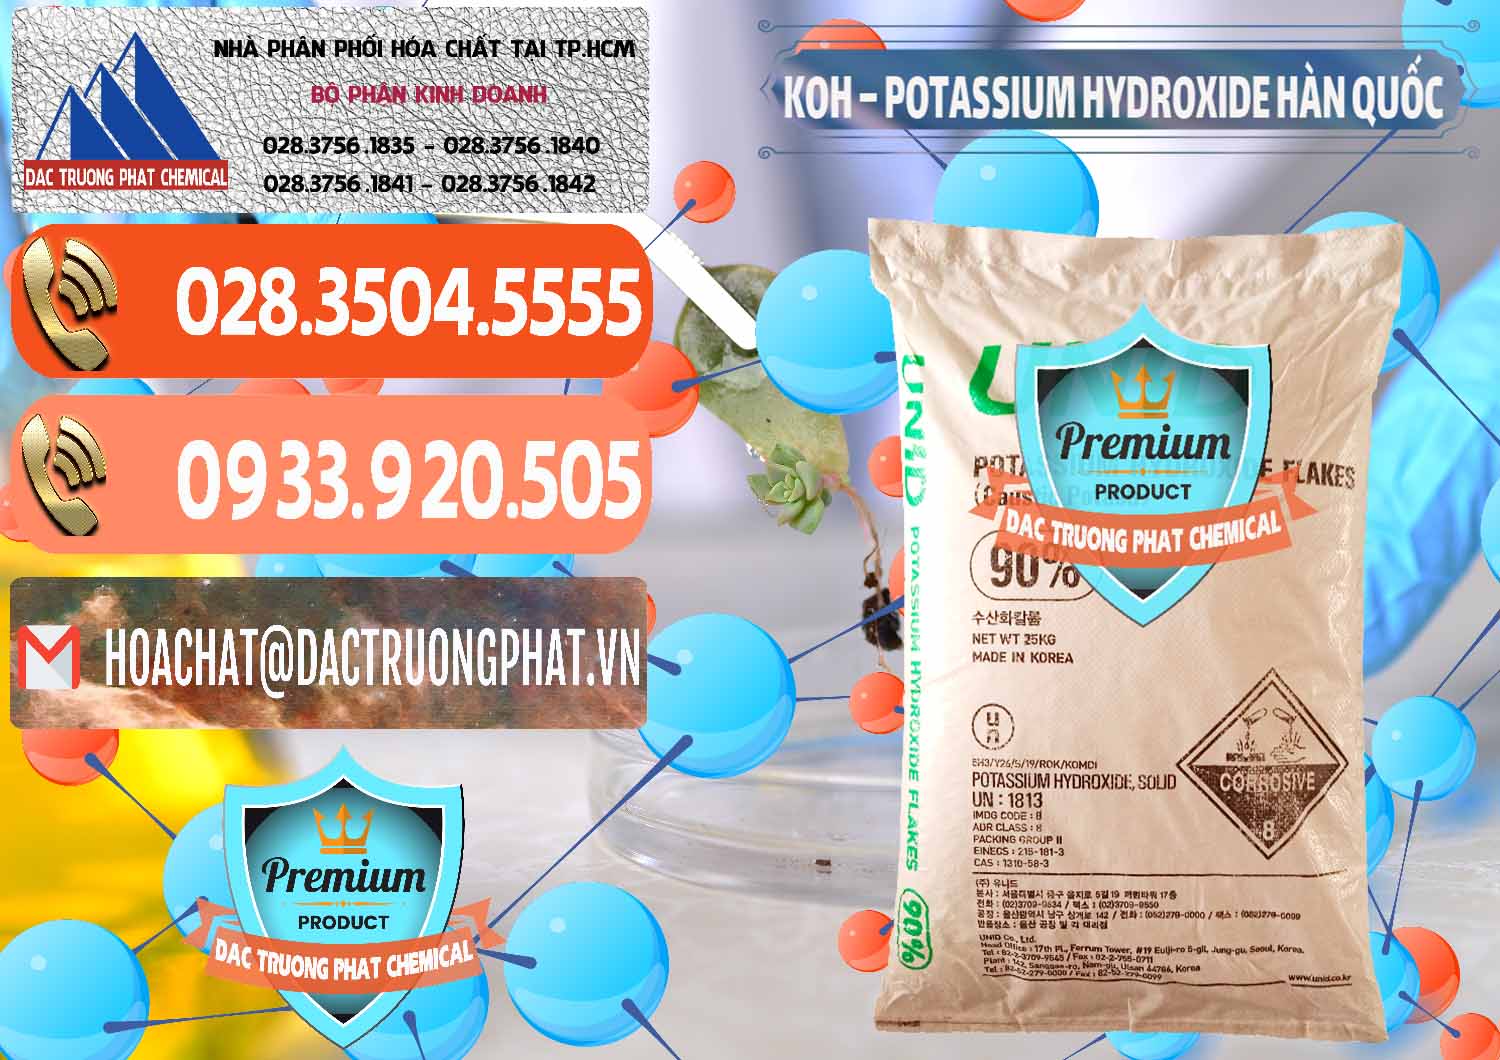 Nơi bán và cung cấp KOH ( 90%) – Potassium Hydroxide Unid Hàn Quốc Korea - 0090 - Cty chuyên cung cấp & bán hóa chất tại TP.HCM - hoachatmientay.com